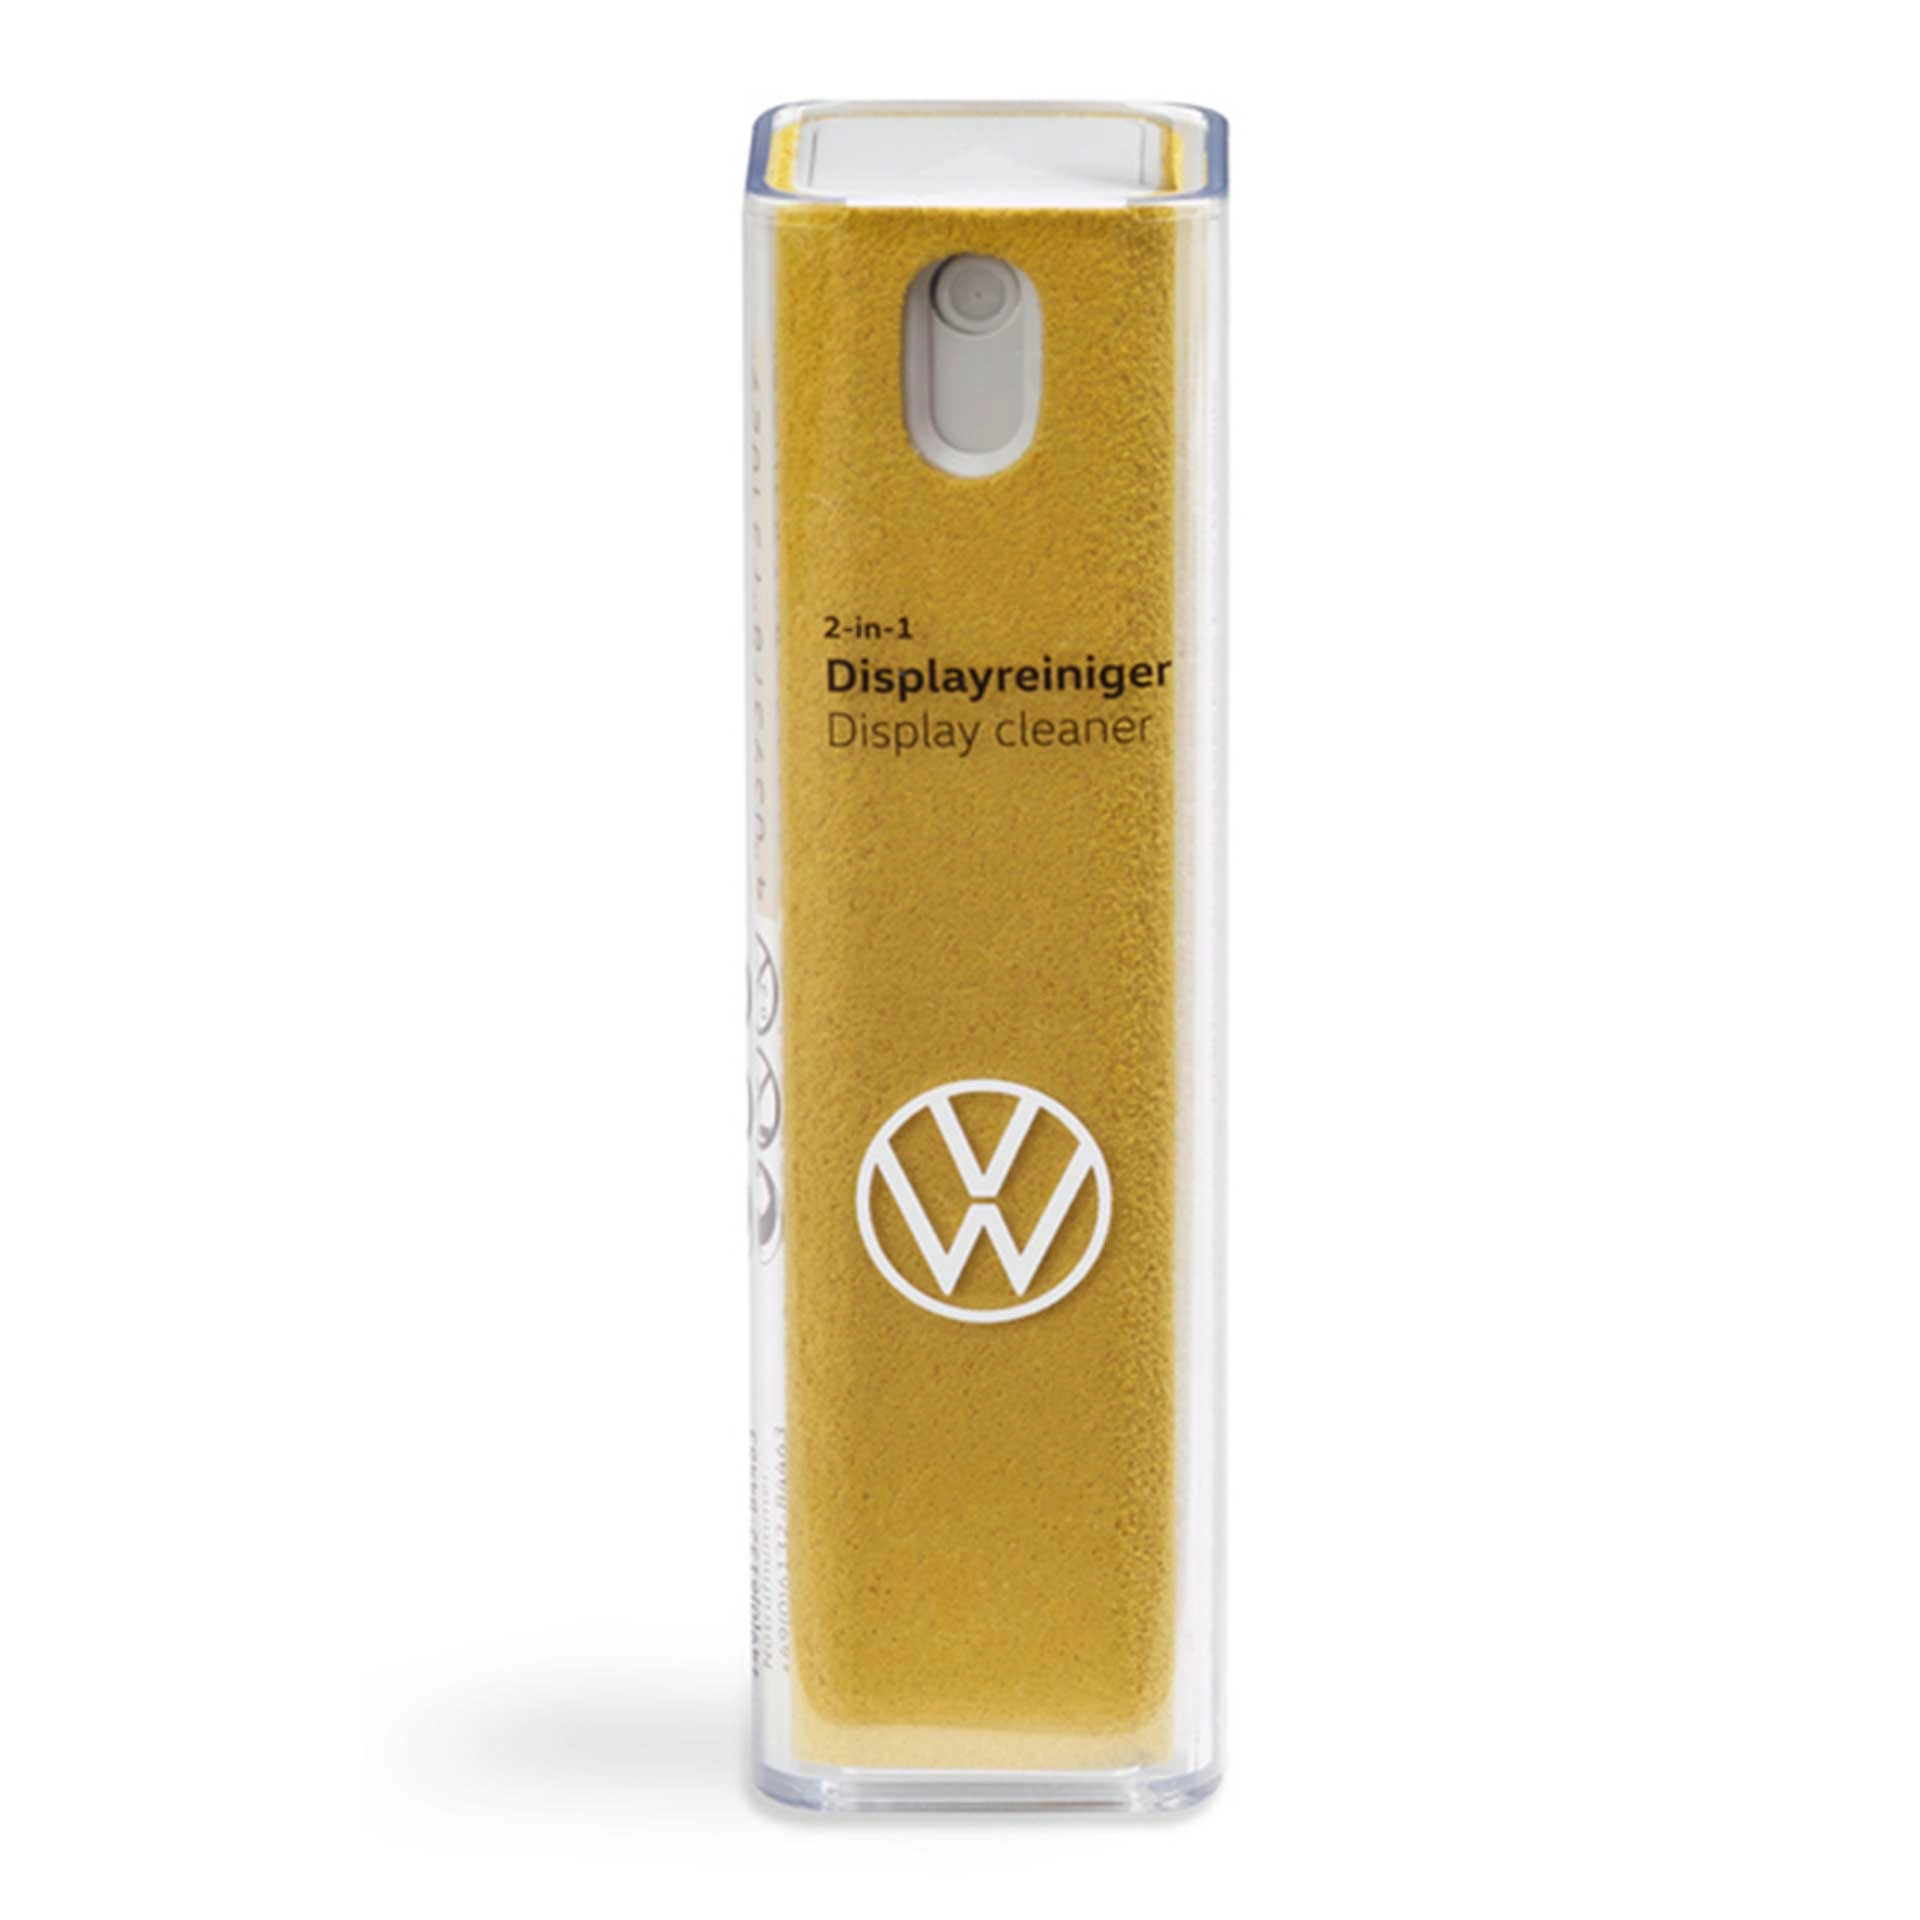 000096311ad655 volkswagen displayreiniger spray gelb rosier onlineshop